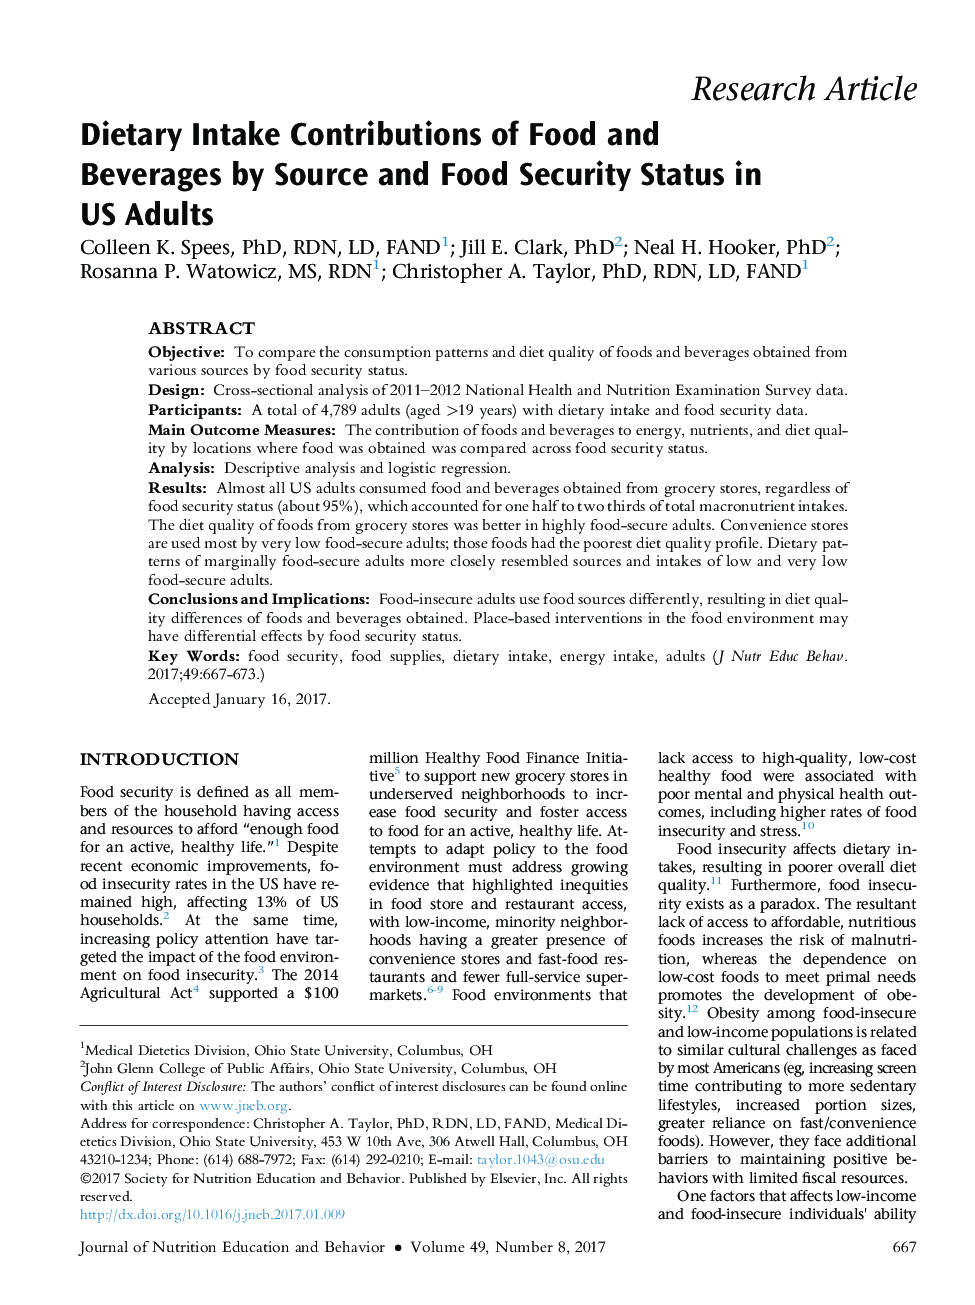 مقادیر مصرف مواد غذایی و نوشیدنی ها از طریق وضعیت منبع و امنیت غذایی در بزرگسالان ایالات متحده 